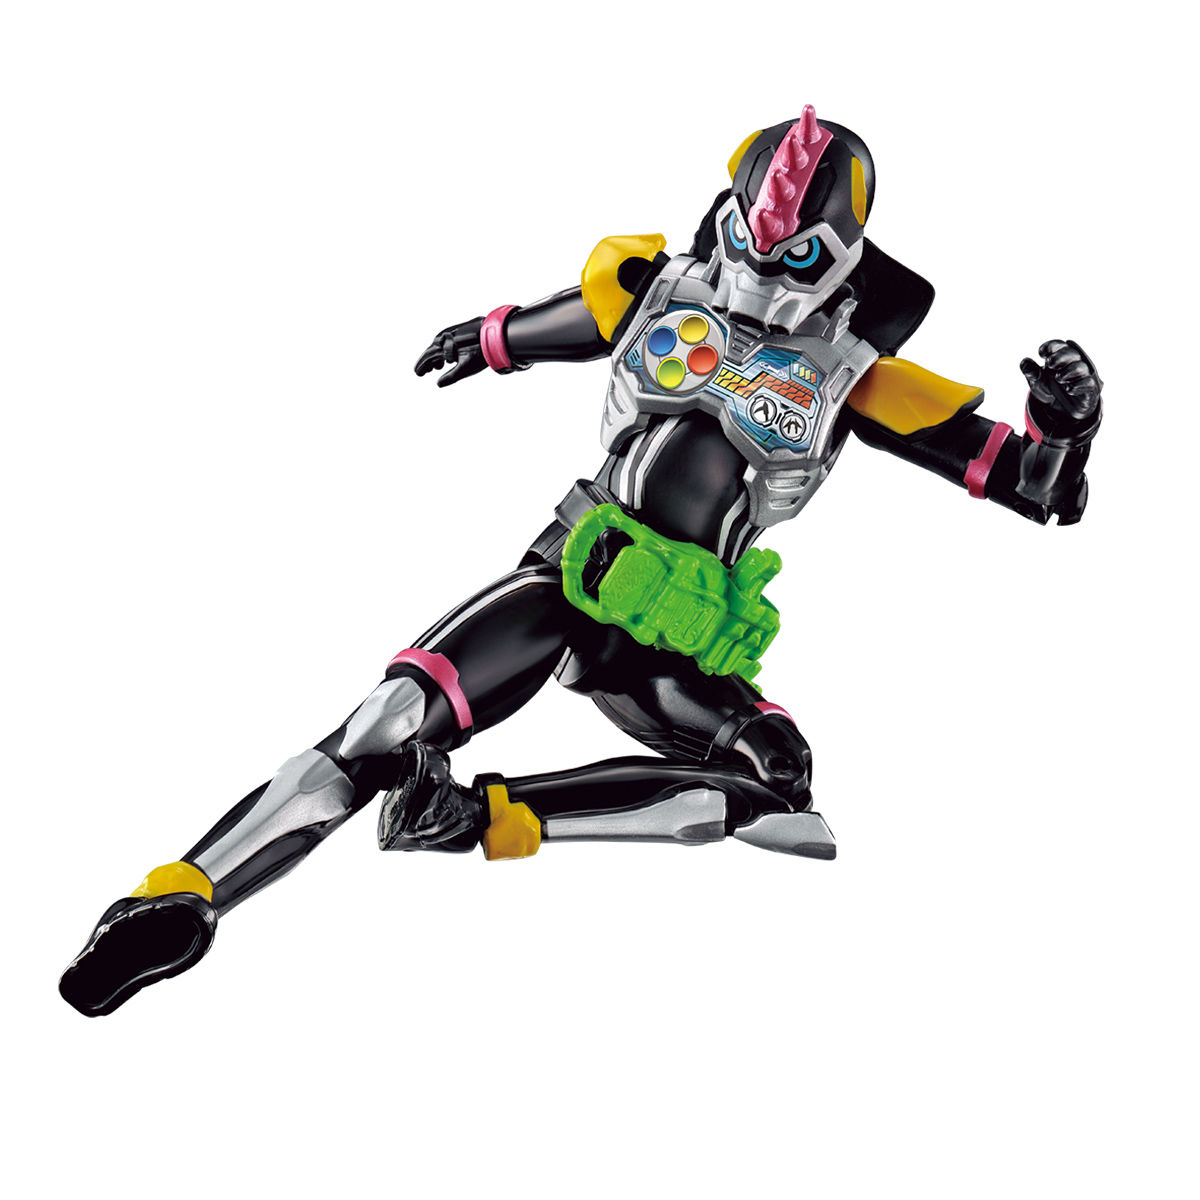 RKFレジェンドライダーシリーズ『仮面ライダーレーザーターボ バイクゲーマー レベル0』可動フィギュア-003